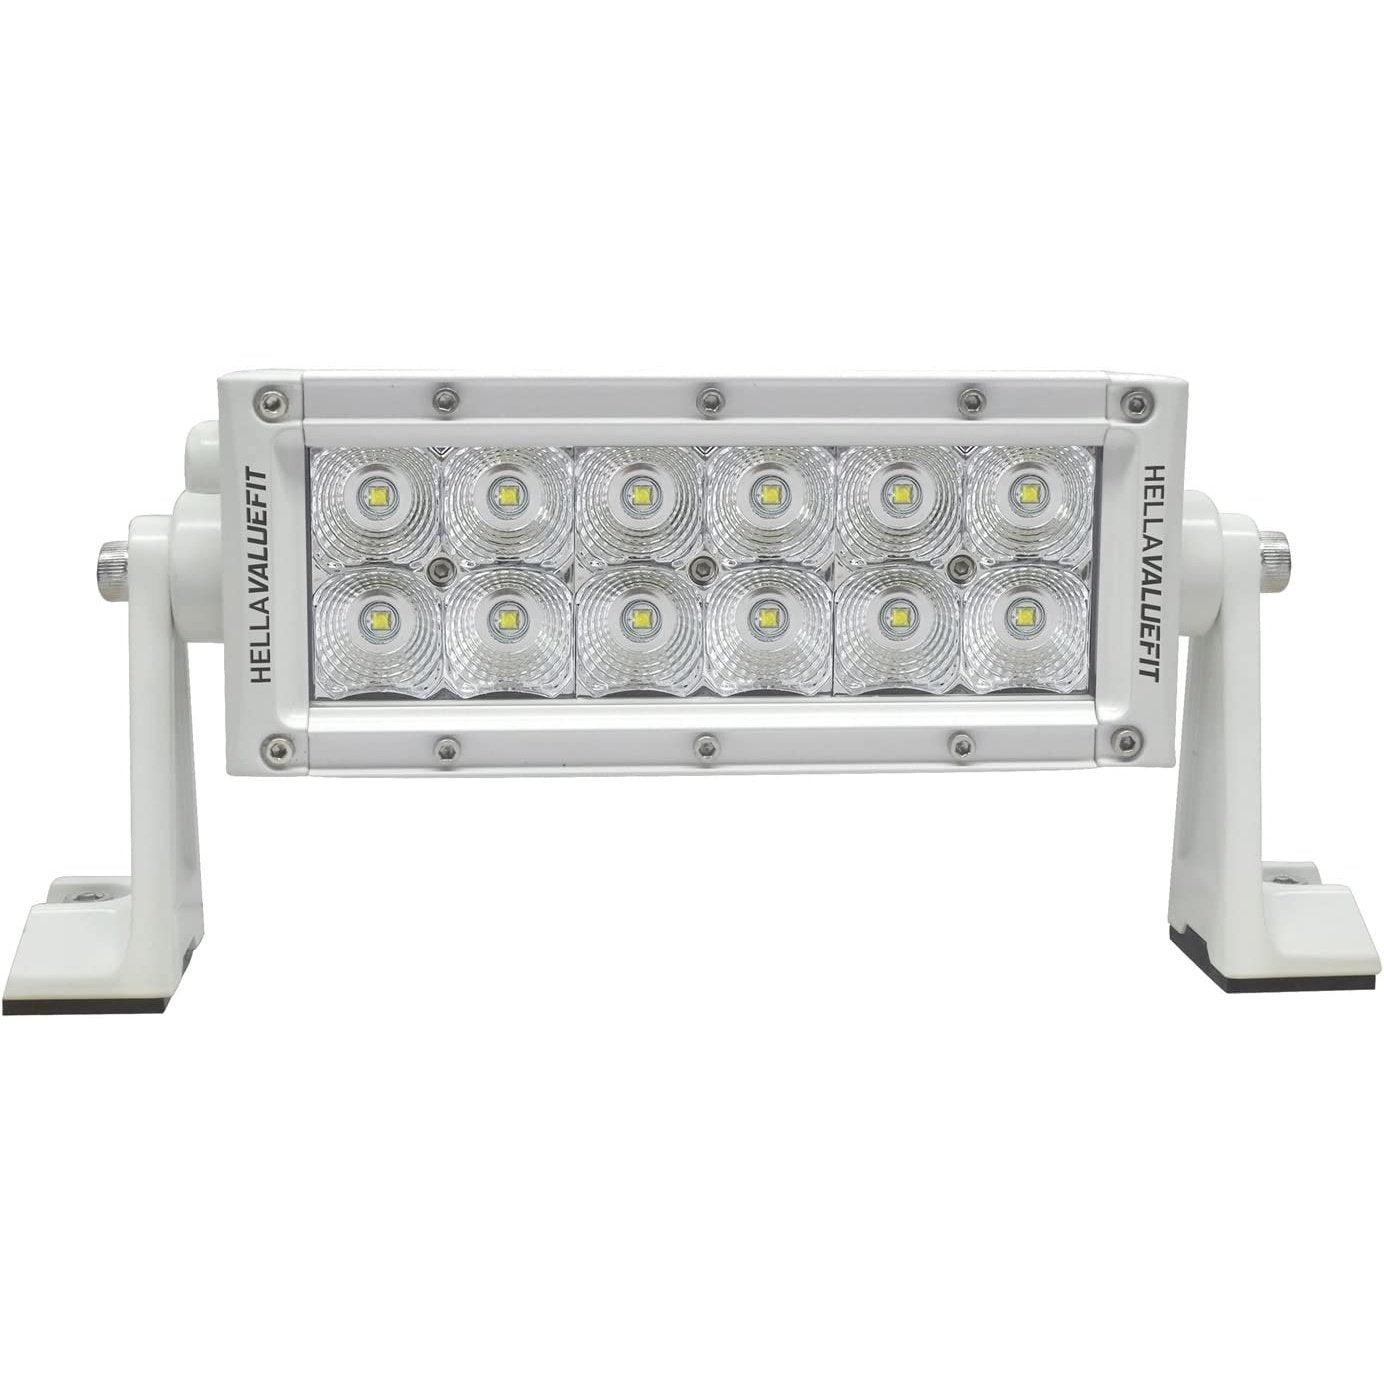 Value Fit Sport Series 12 LED Flood Light Bar - 8" - White